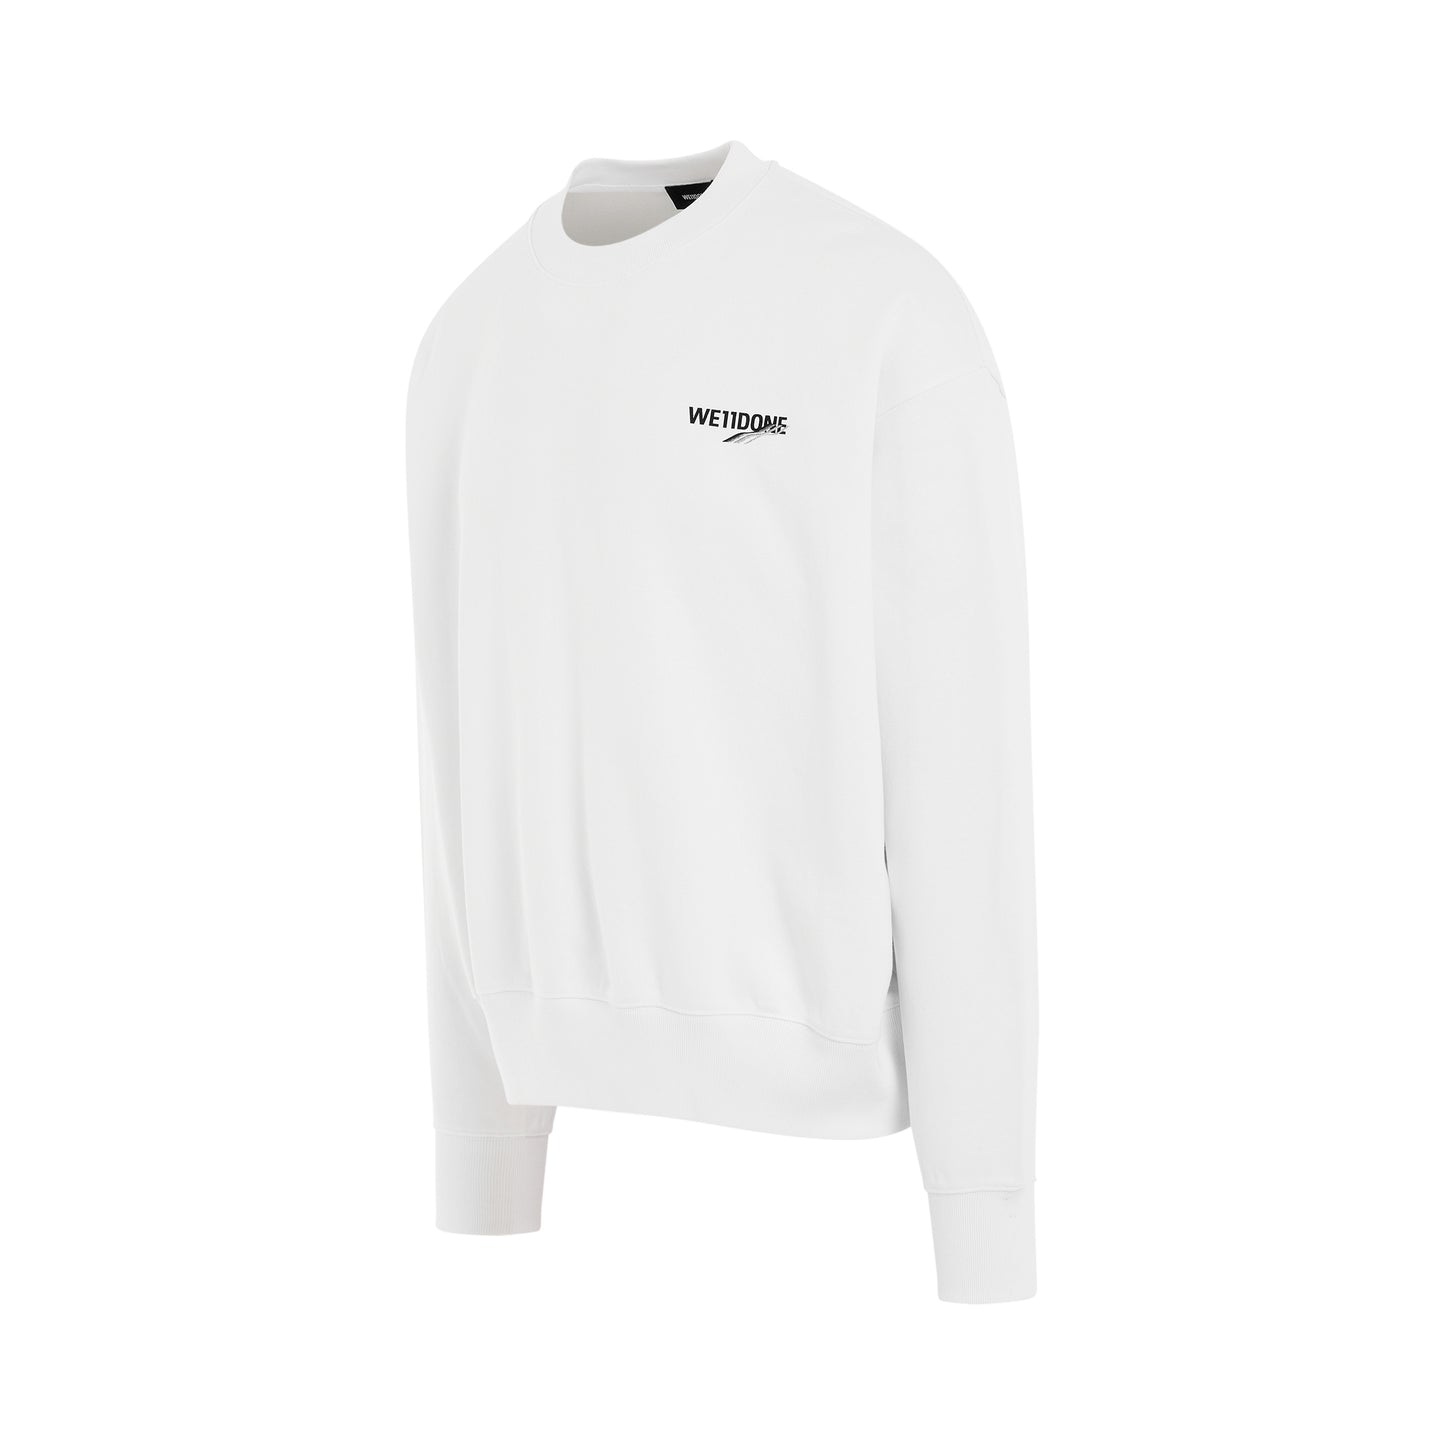 Basic 1506 Logo Sweatshirt in White